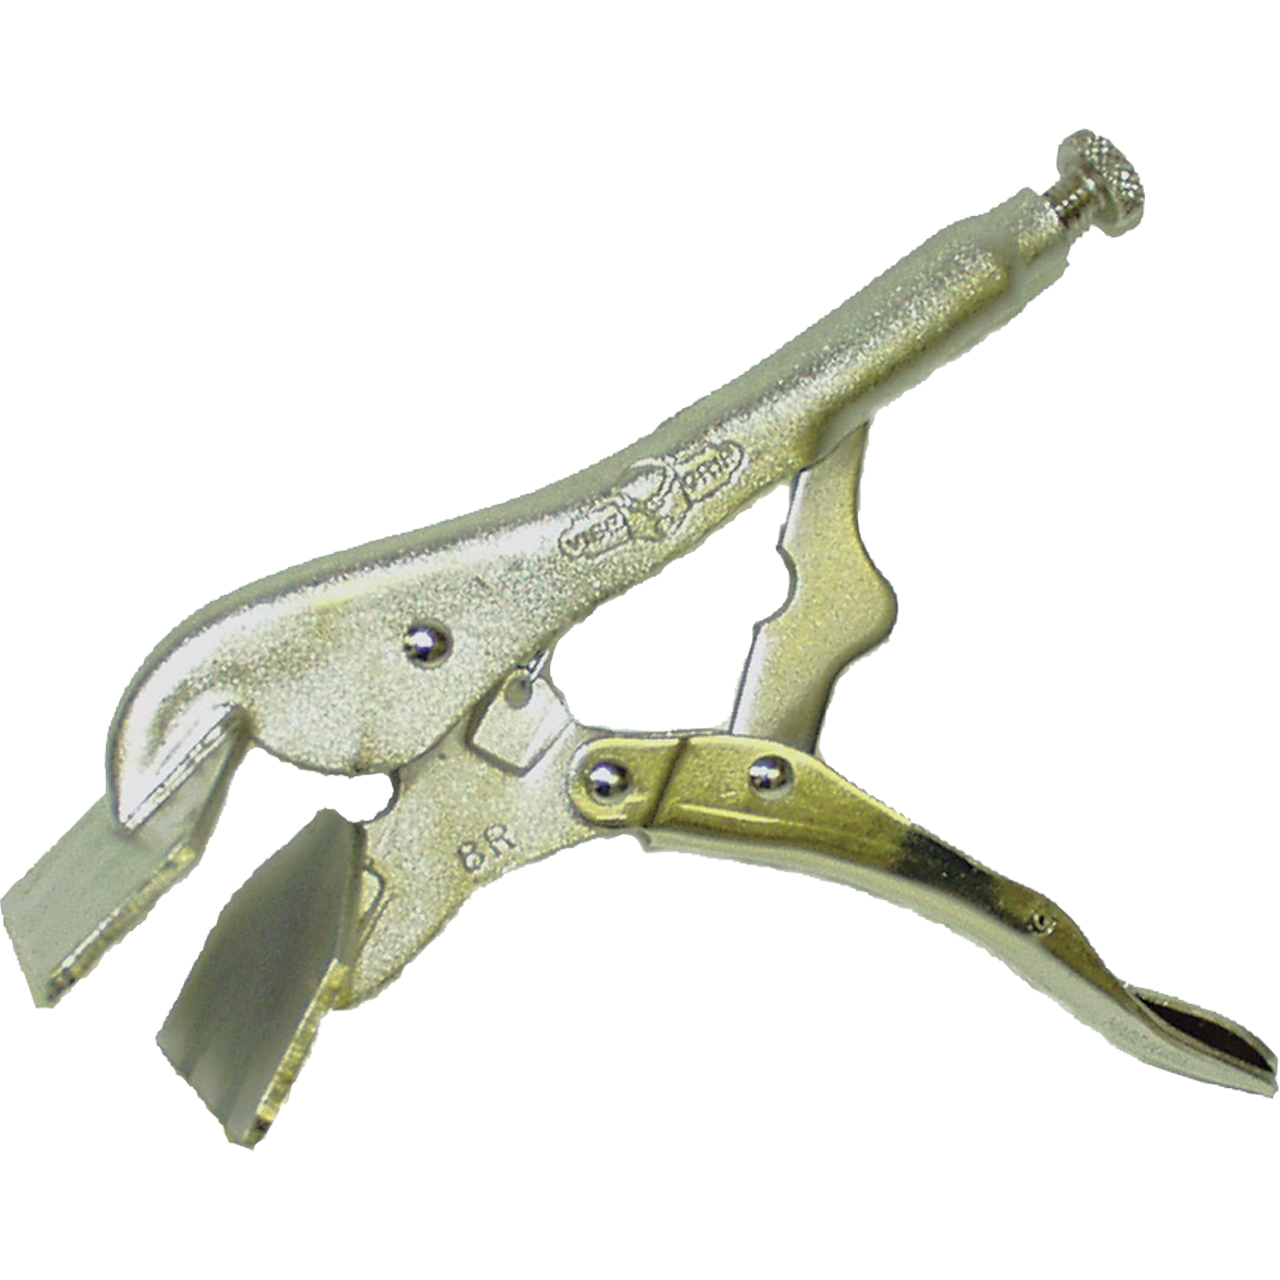 Teng Tools 8 Inch Sheet Metal Vise Grip Power Grip Locking Pliers/Tool –  Teng Tools USA